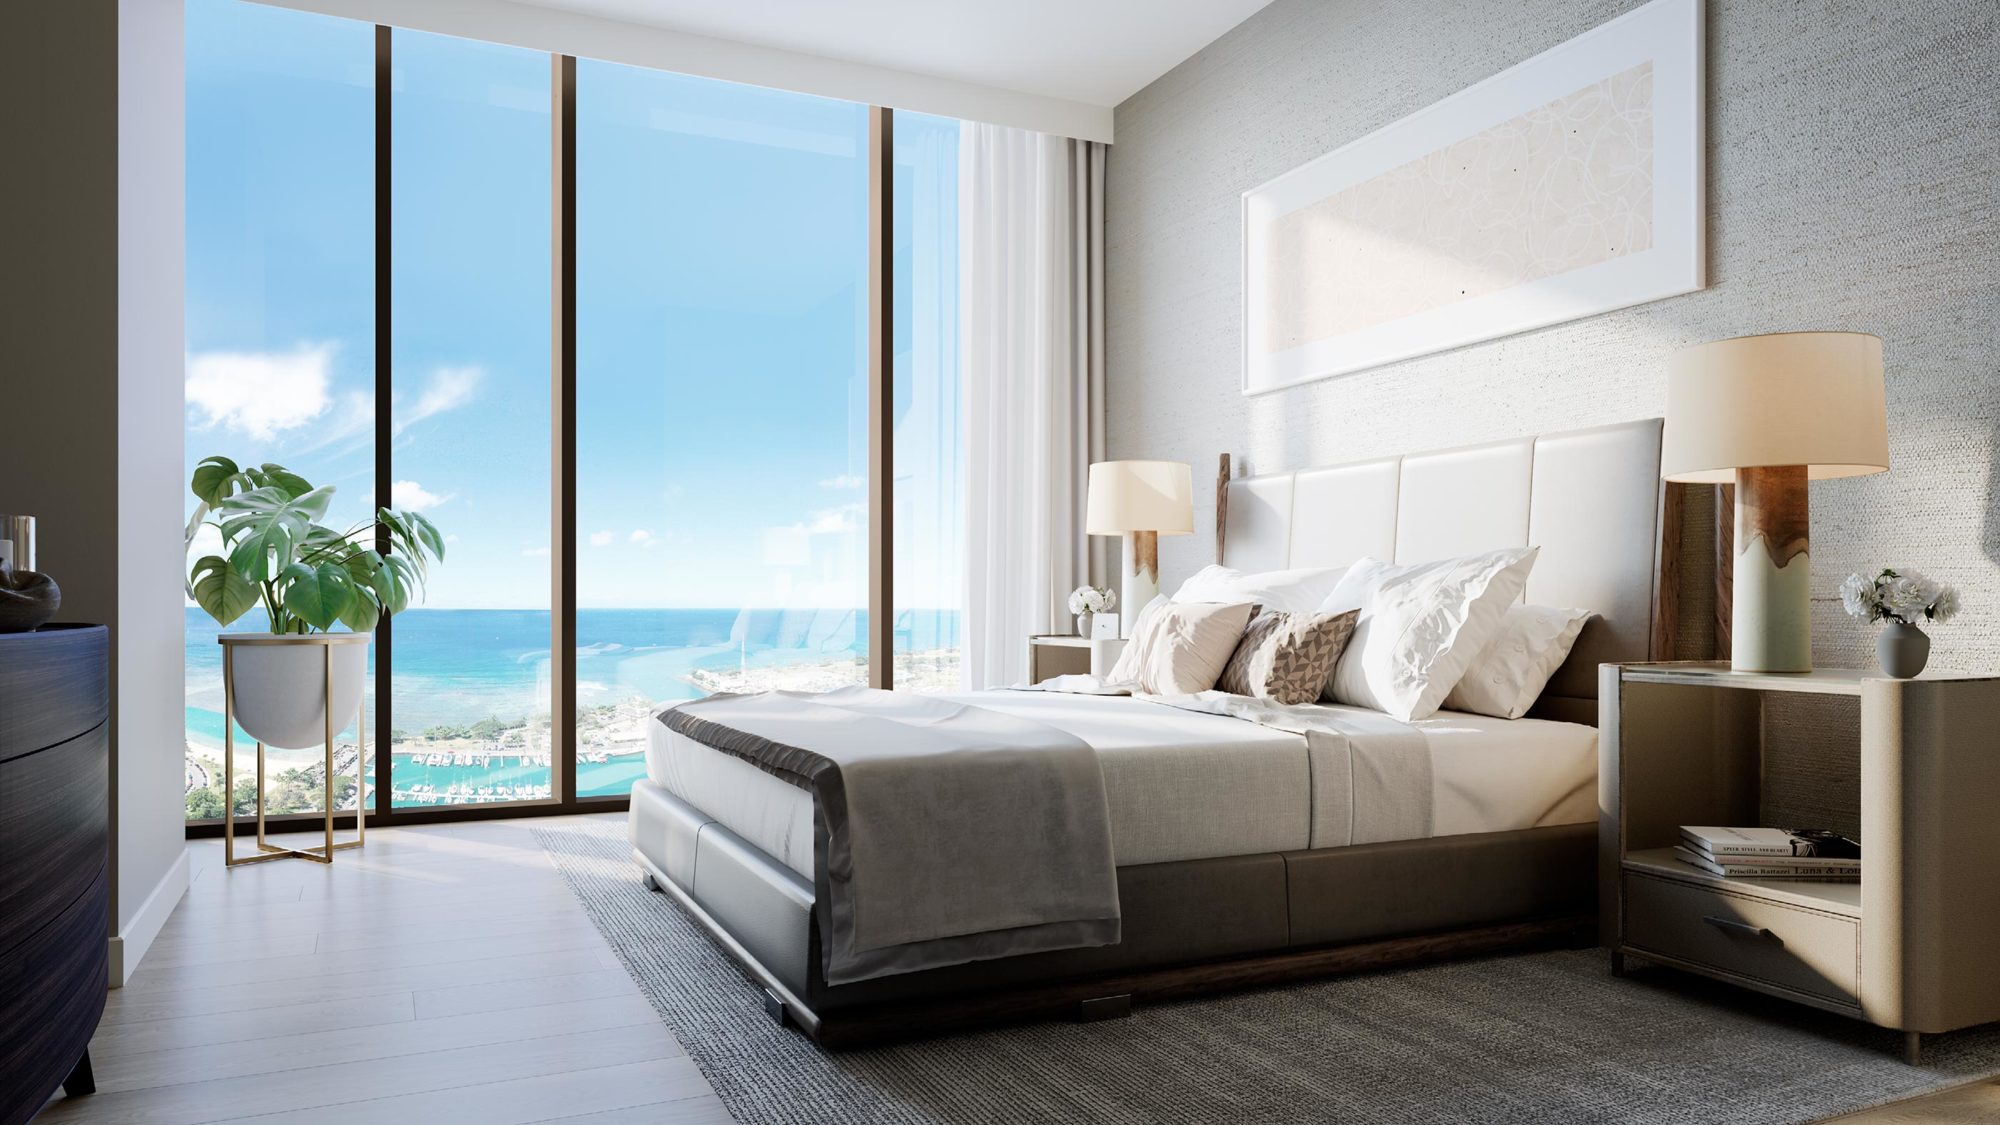 Bedroom with ocean view                                